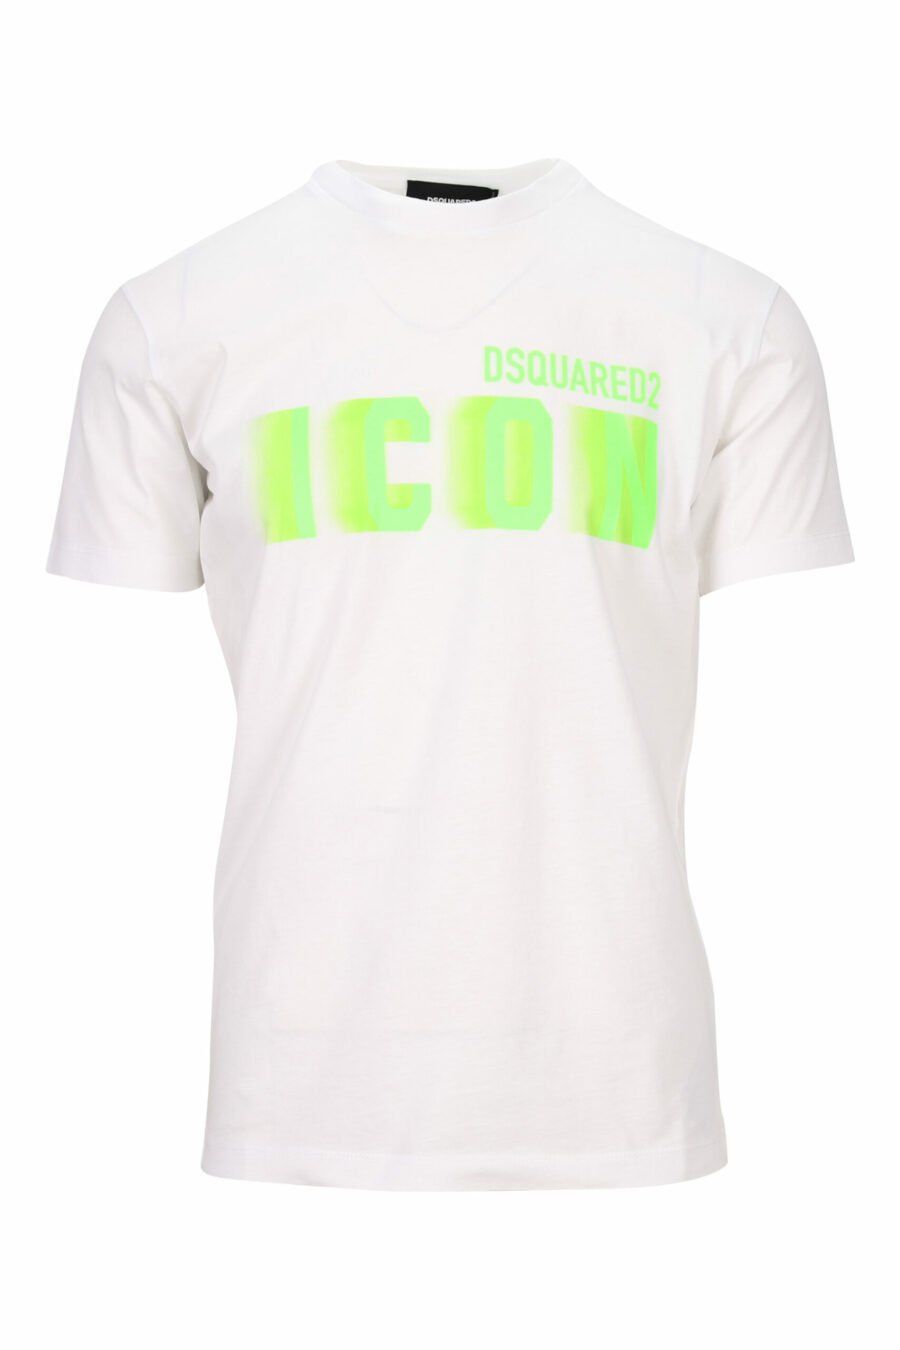 Weißes T-Shirt mit neongrünem, verschwommenem "Icon"-Maxilogo - 8054148358914 skaliert